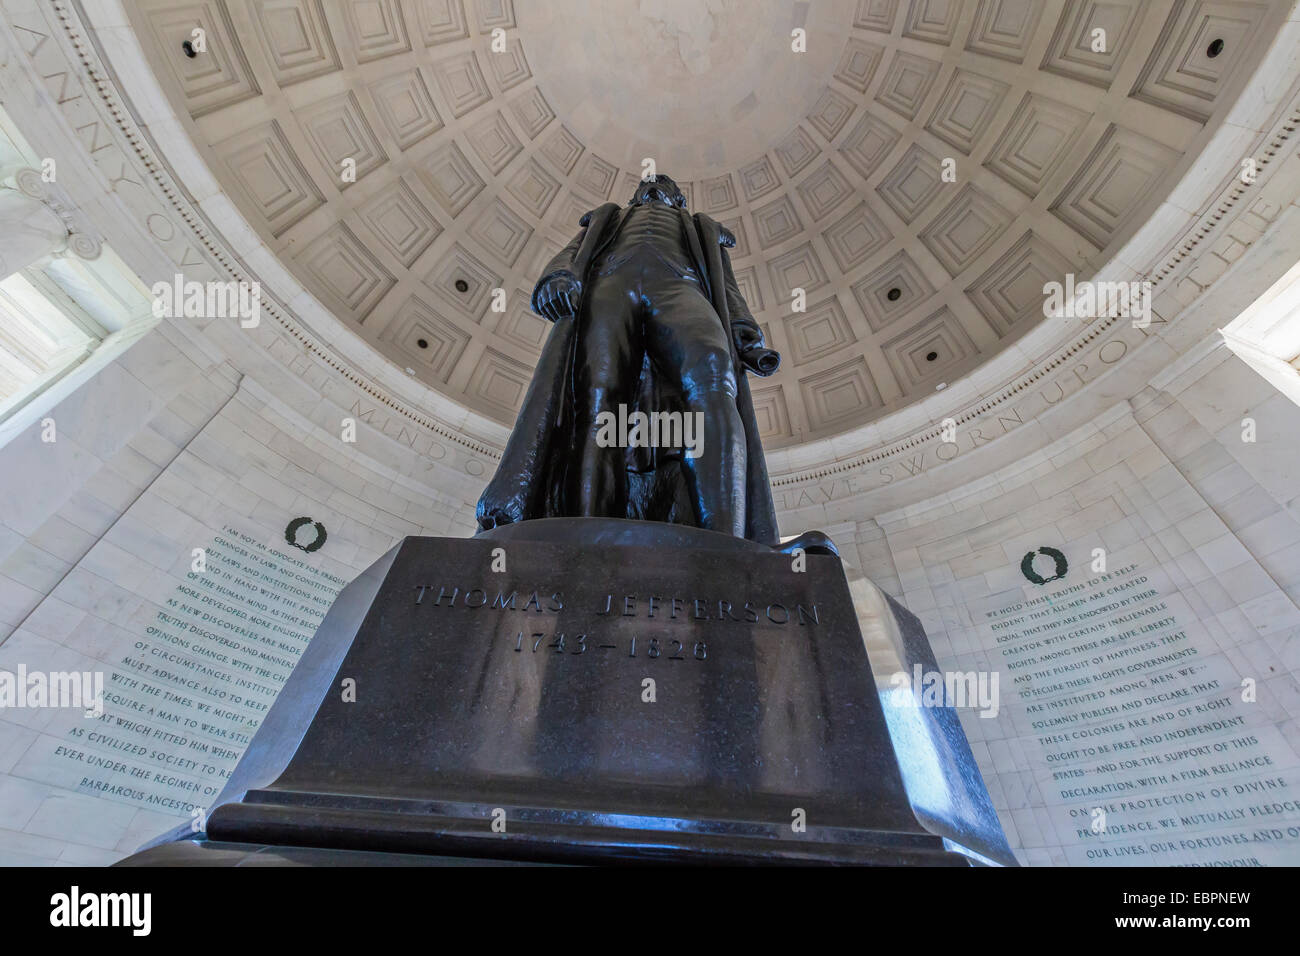 À l'intérieur de la rotonde du Jefferson Memorial, Washington D.C., Etats-Unis d'Amérique, Amérique du Nord Banque D'Images